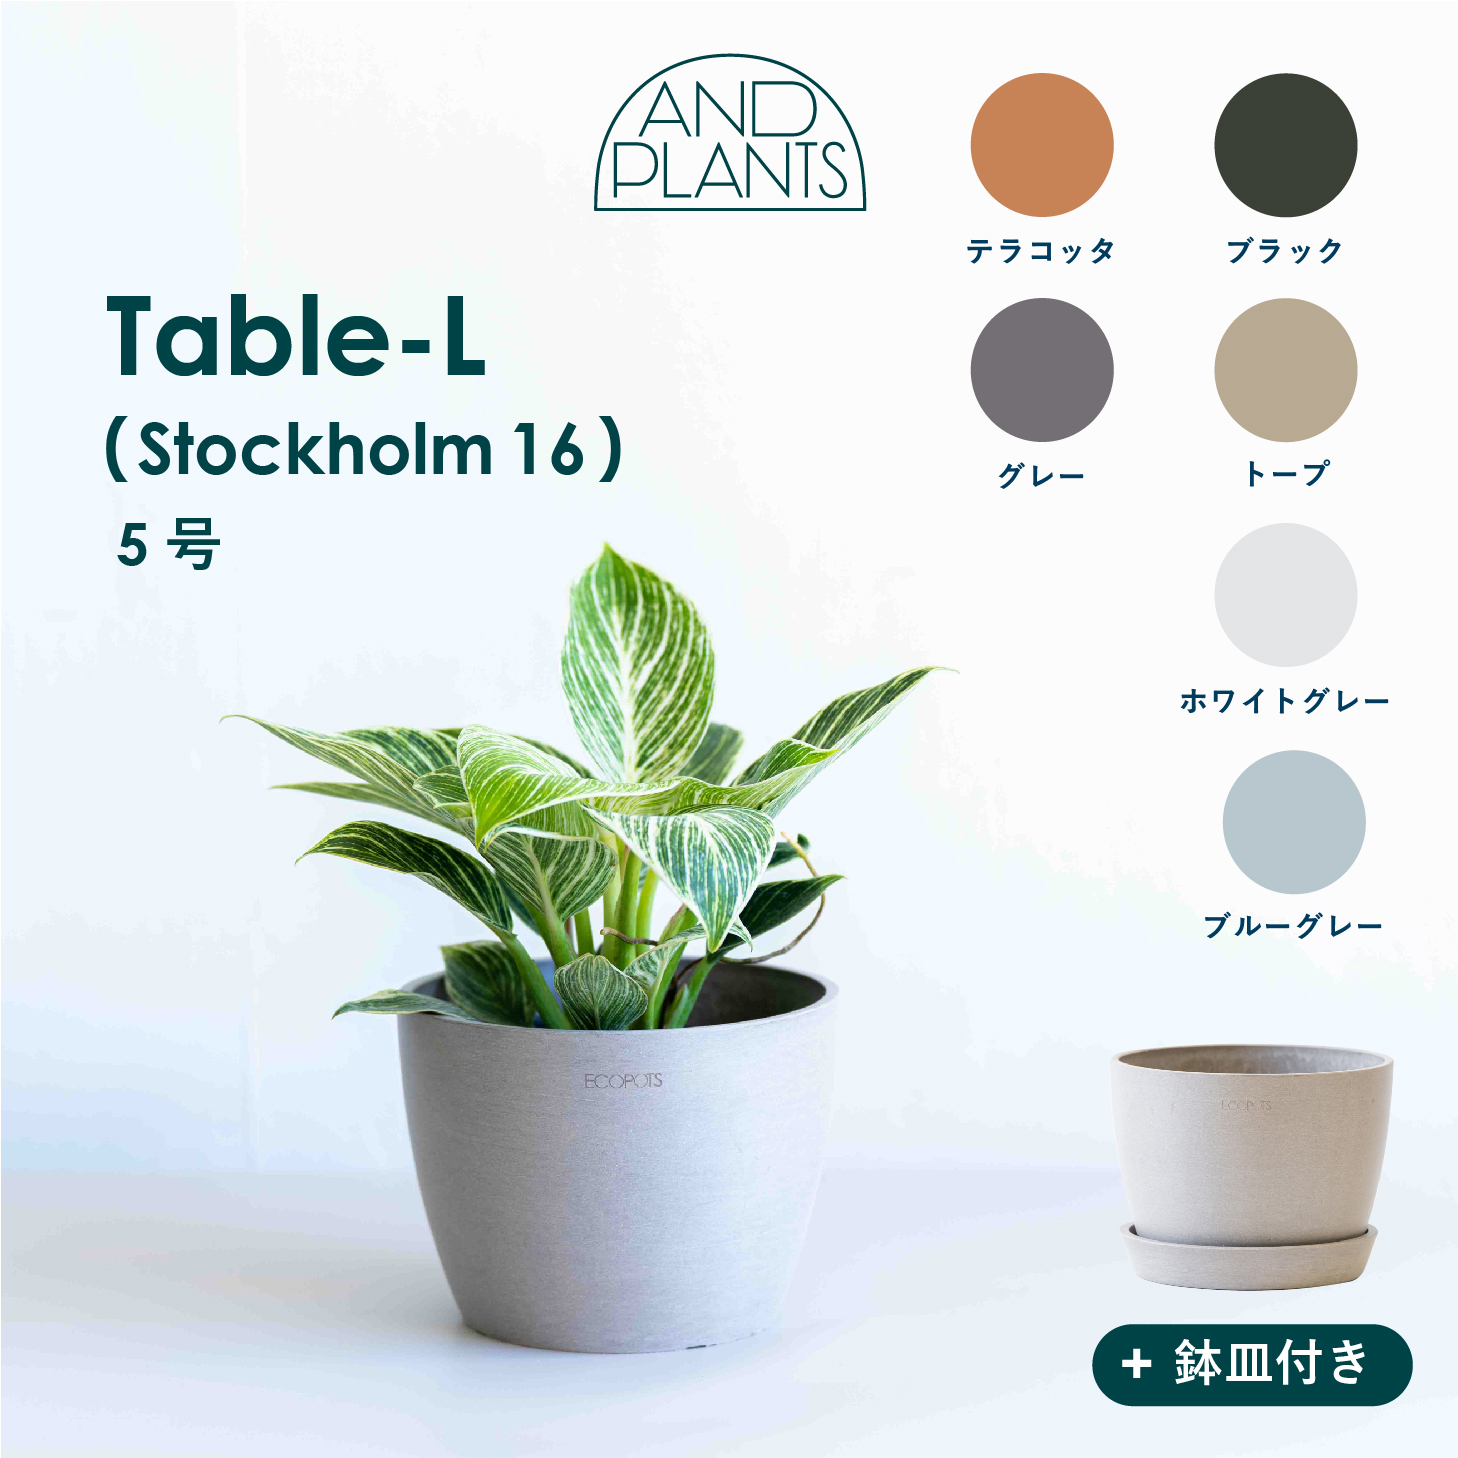 Ecopots Stockholm Table-L 植木鉢 5号 小さい プラスチック+天然石 プランター 軽い おしゃれなインテリアになる鉢  鉢カバー | AND PLANTS 植物・植木鉢・花屋